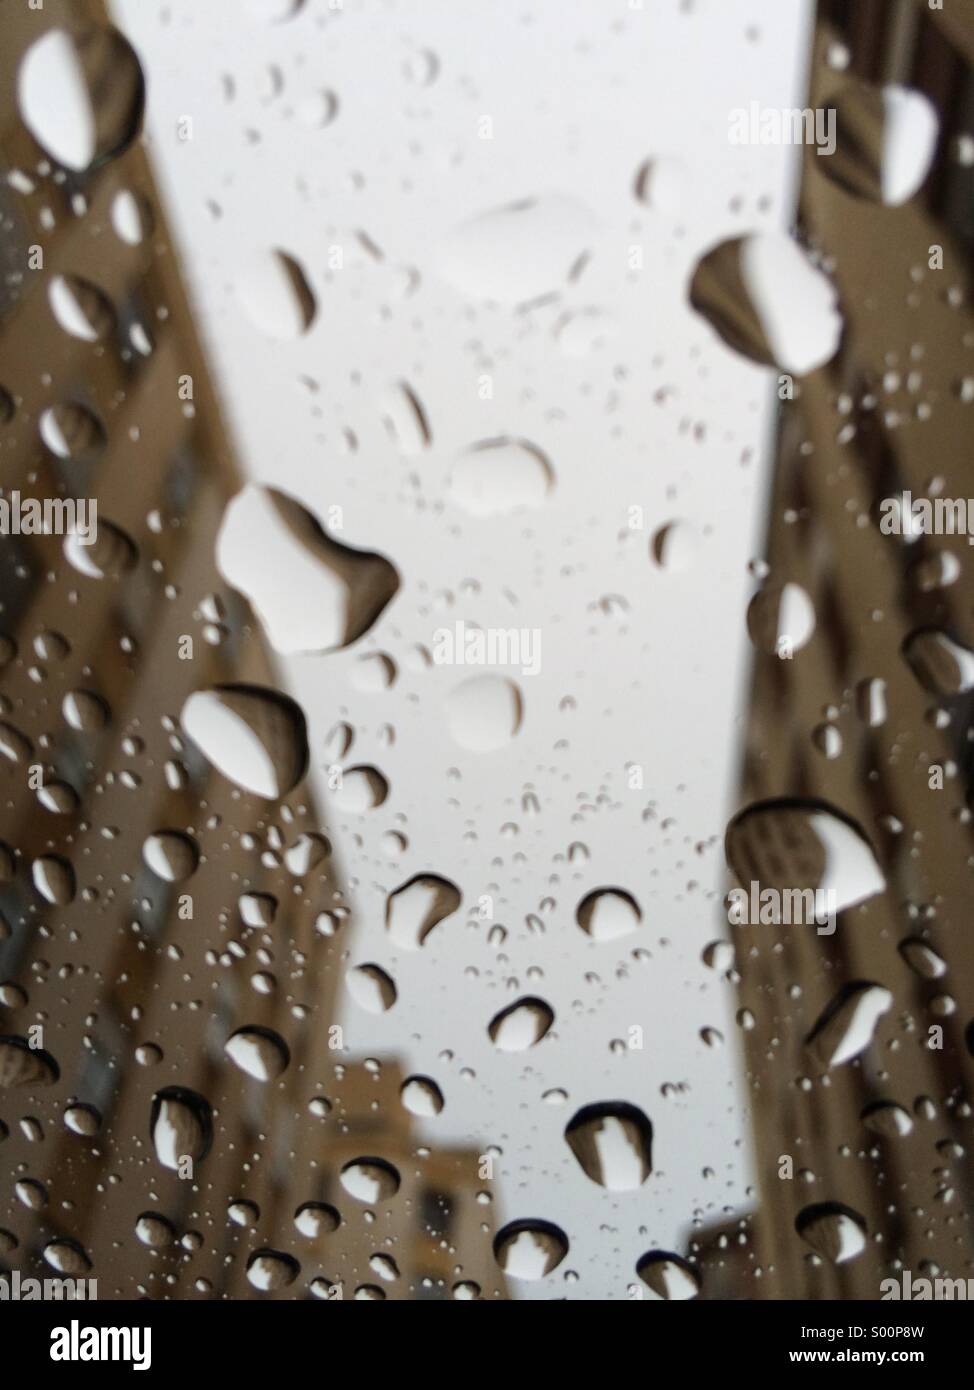 Un giorno di pioggia dall'interno dell'auto Foto Stock